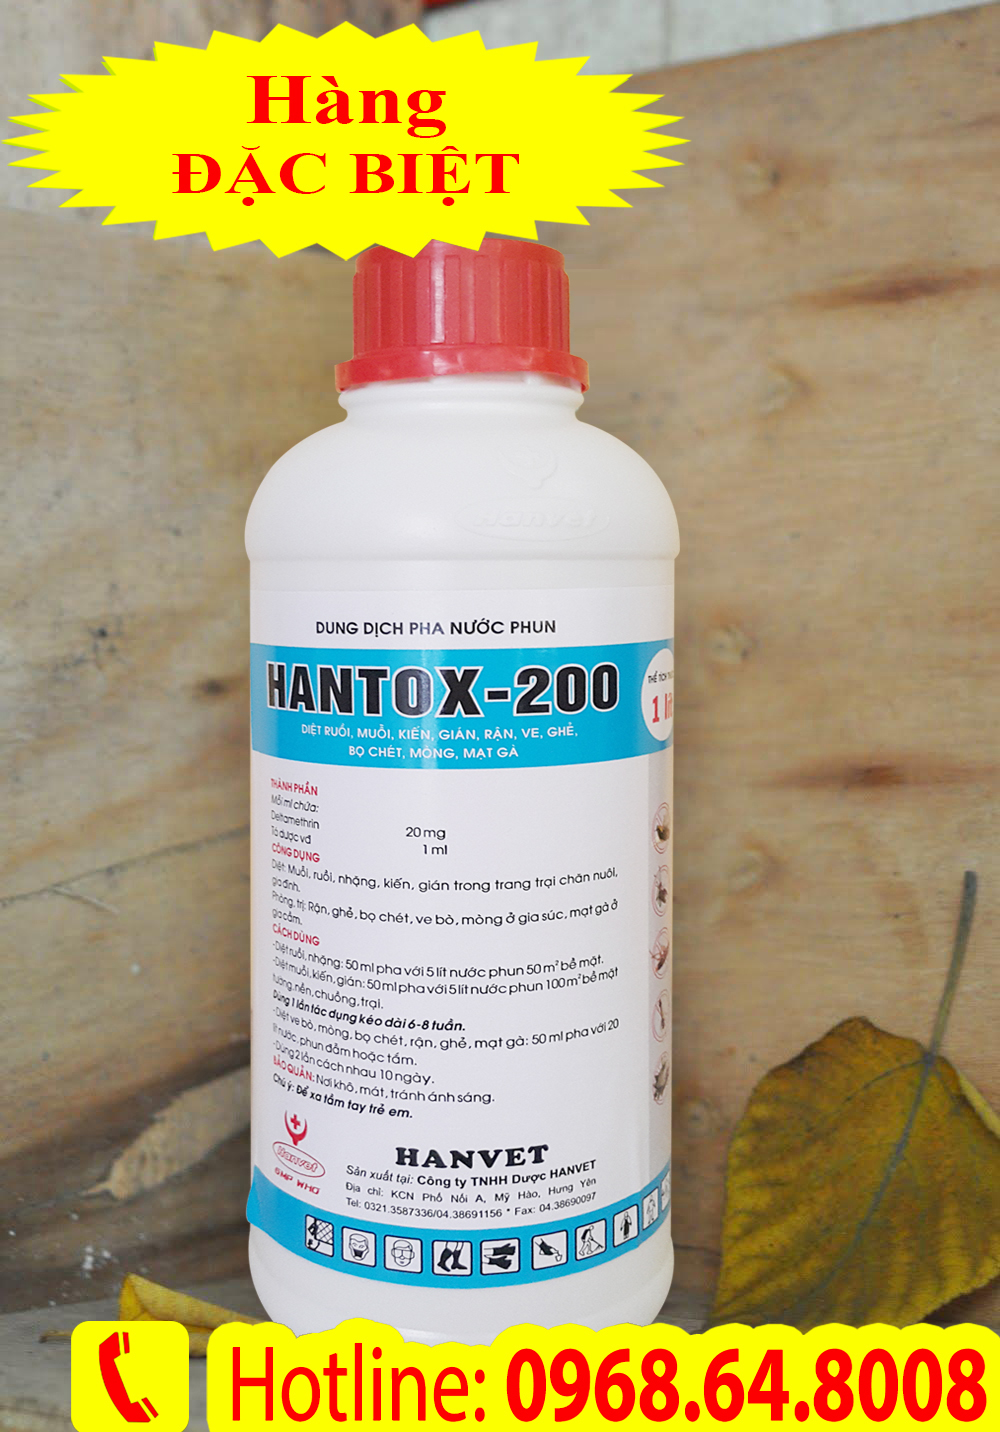 Hantox 200 (1Lít) - (Sản xuất tại VIỆT NAM) - Bộ Thú Y - Thuốc diệt côn trùng, muỗi, gián, ruồi, kiến, bọ chét...